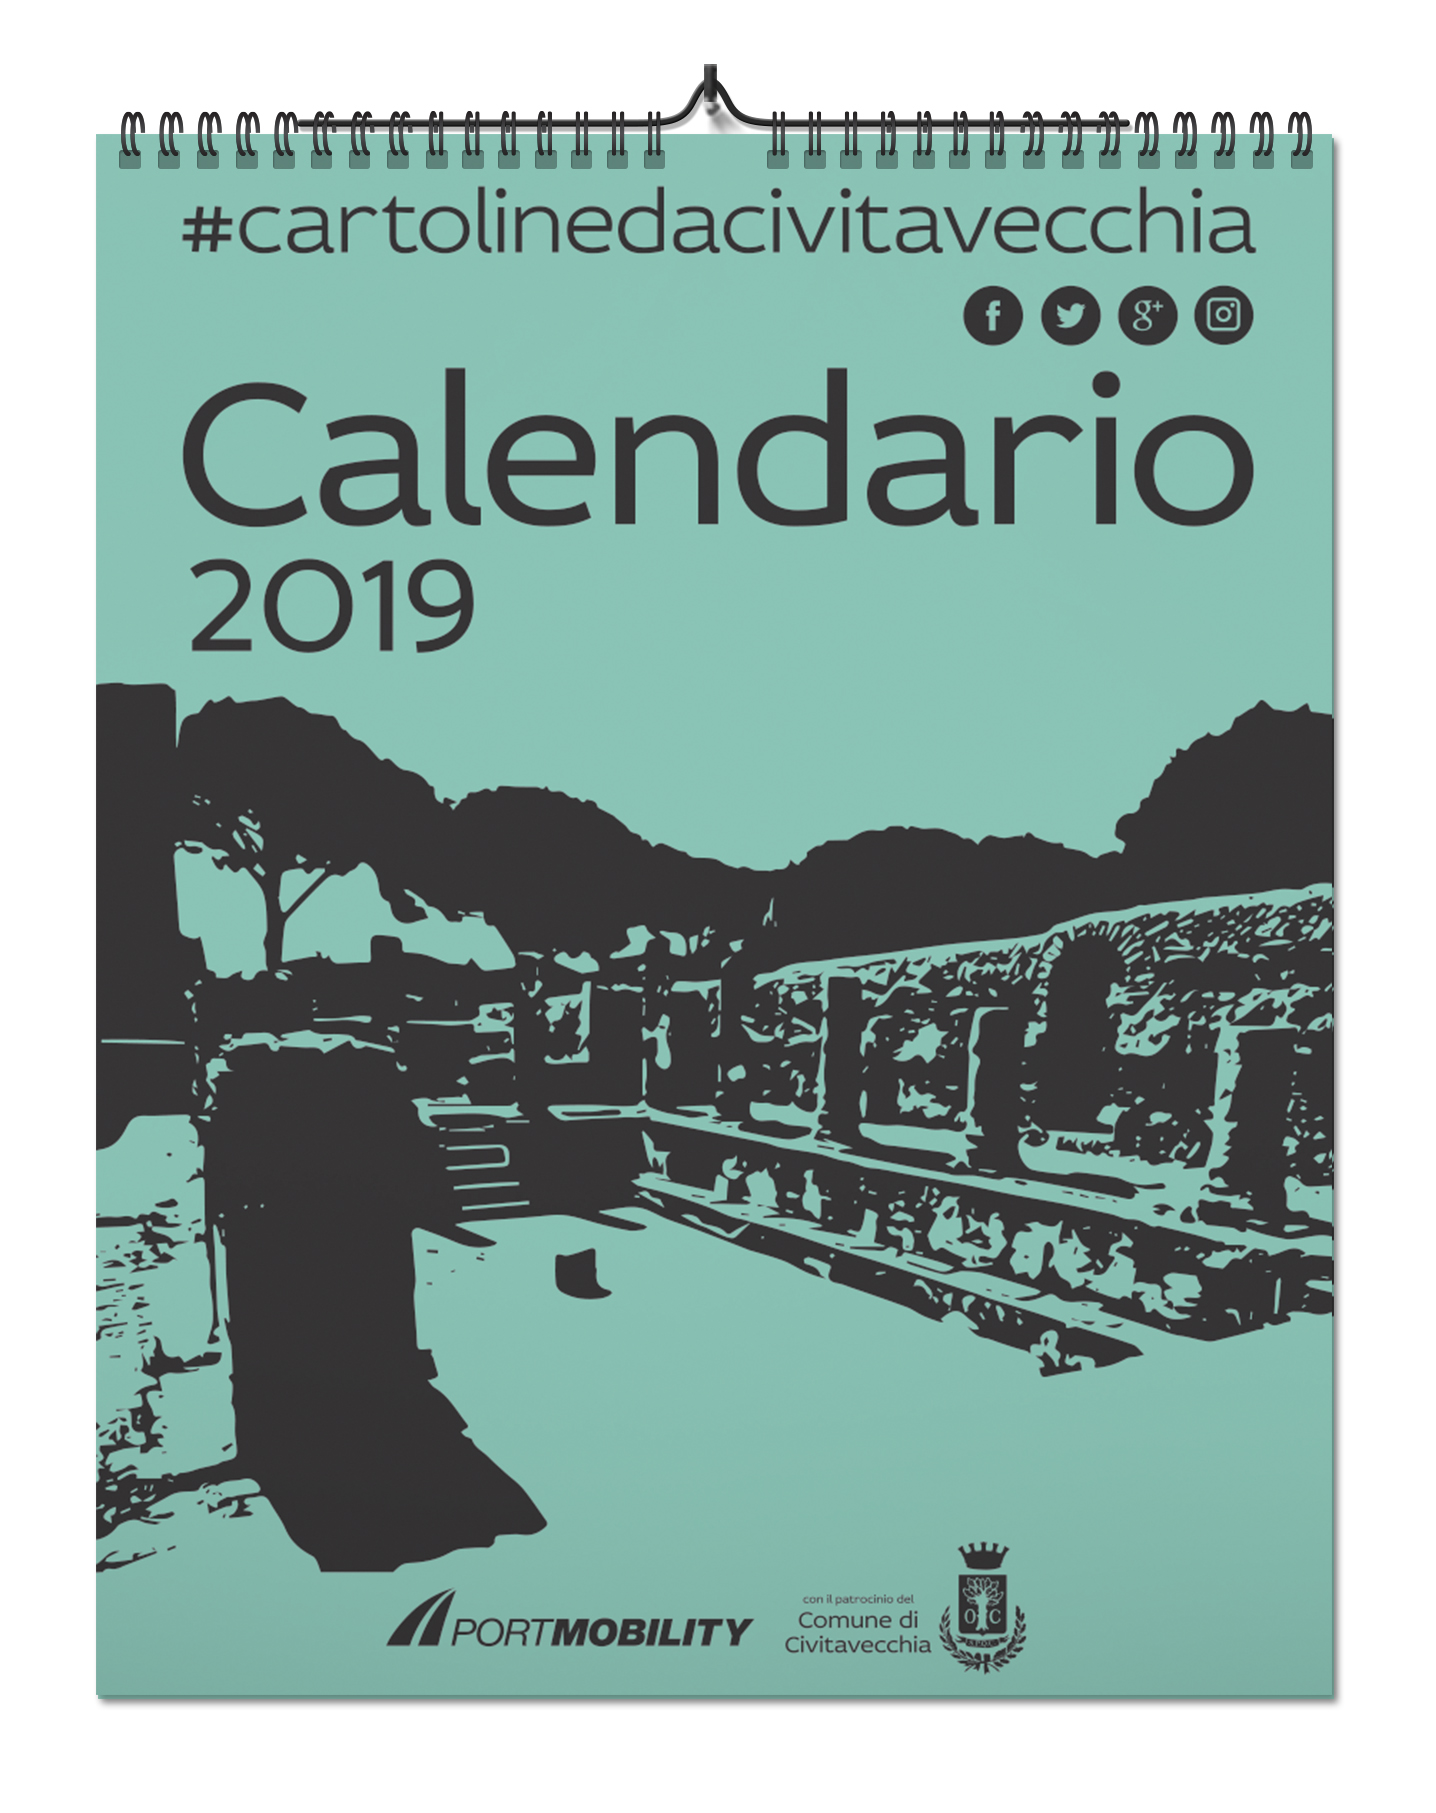 Cartoline da Civitavecchia 2019: la copertina del calendario